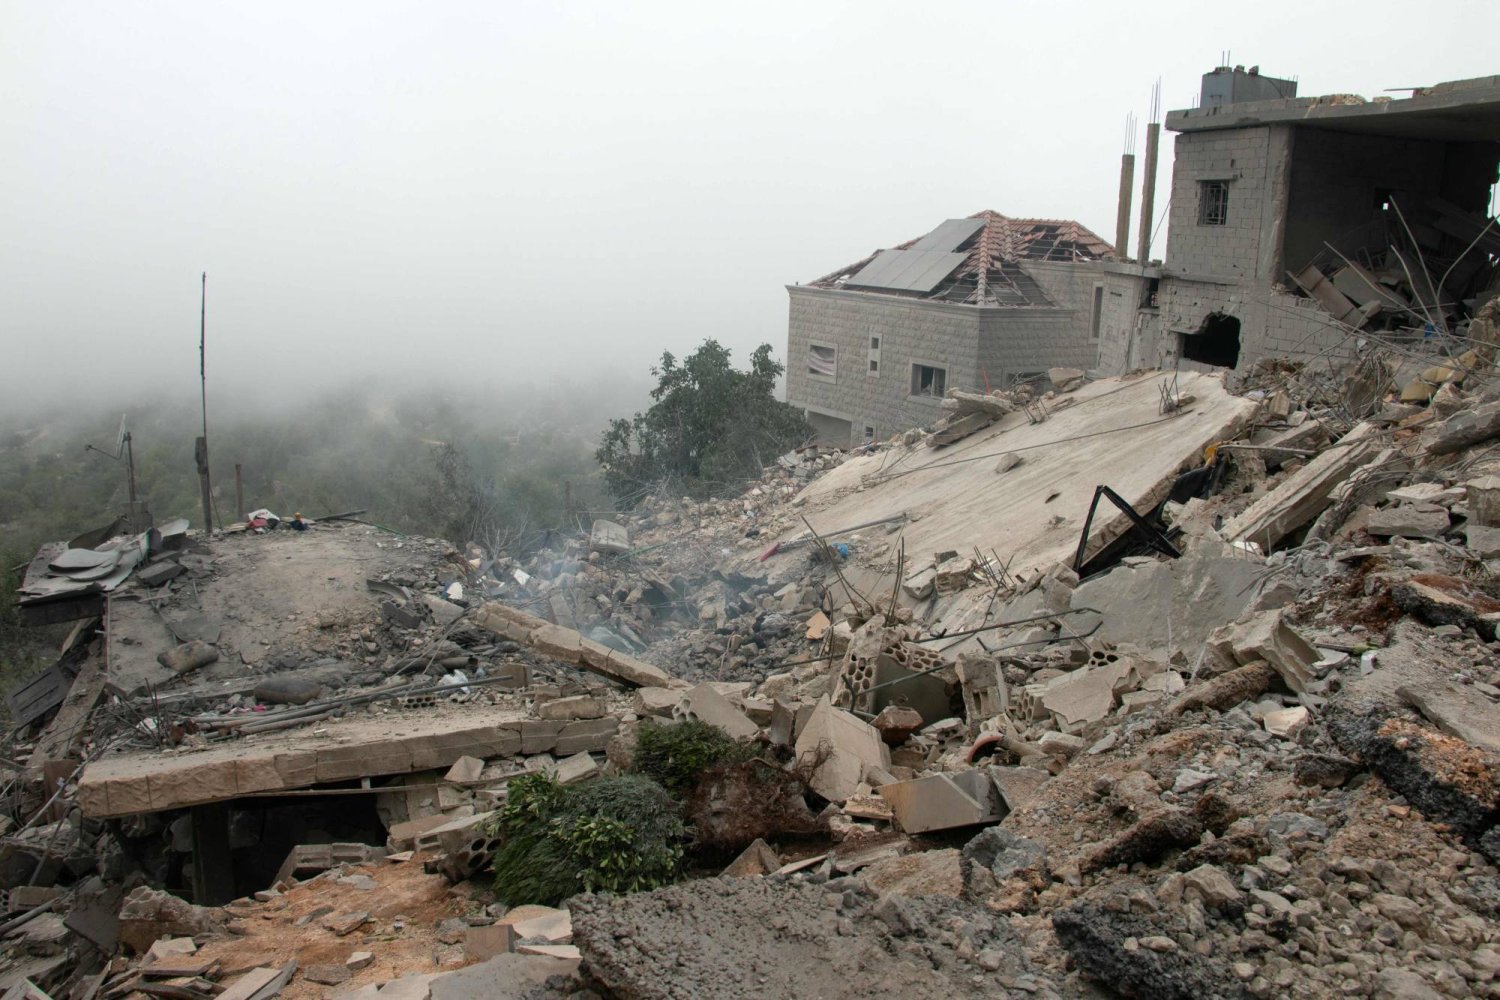 منزل مدمر في بلدة كفرشوبا الحدودية في جنوب لبنان بعد استهدافه بغارة إسرائيلية (أ.ف.ب)